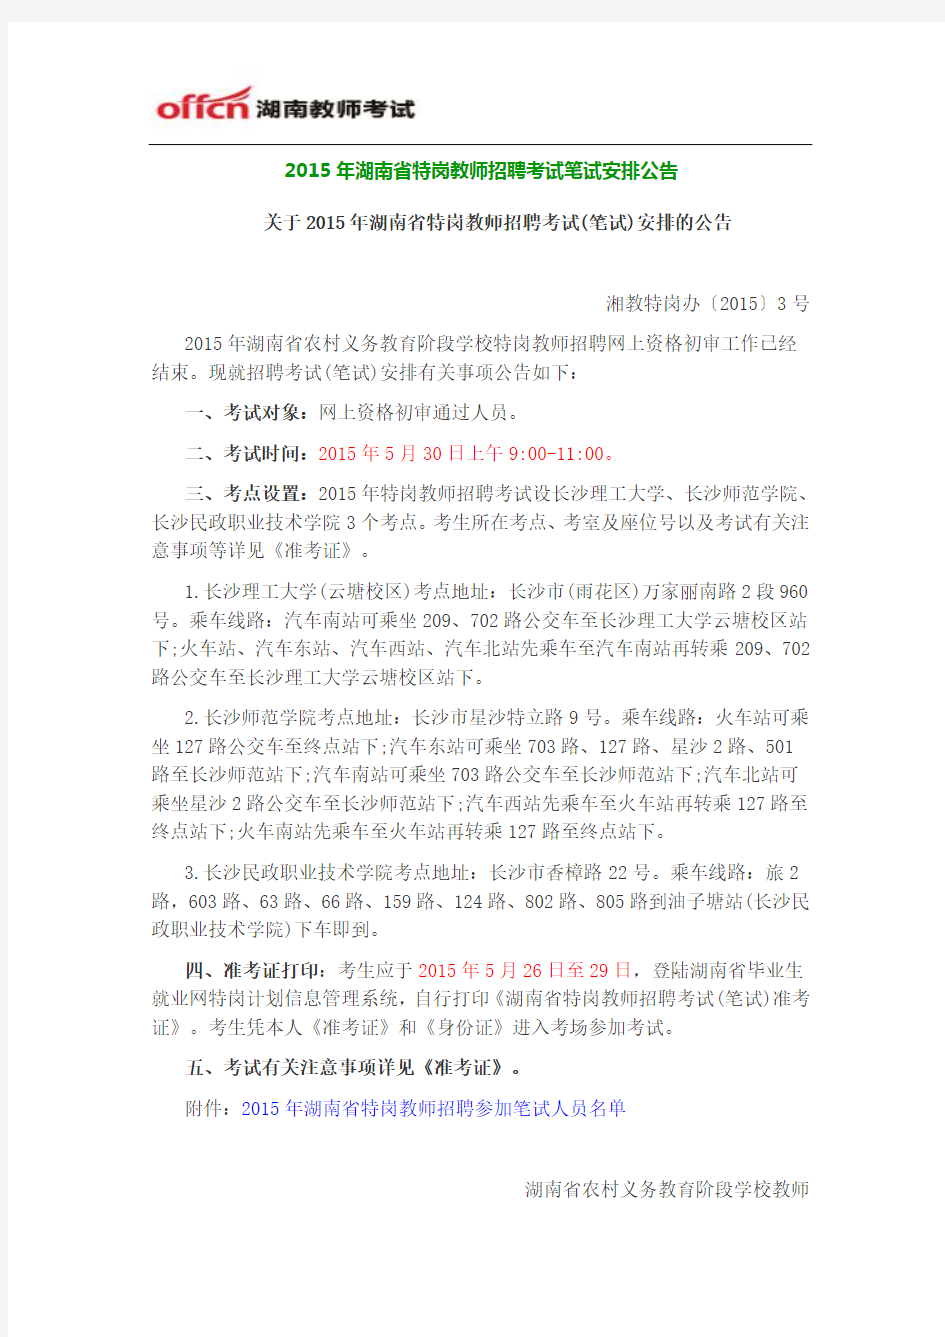 2015年湖南省特岗教师招聘考试笔试安排公告